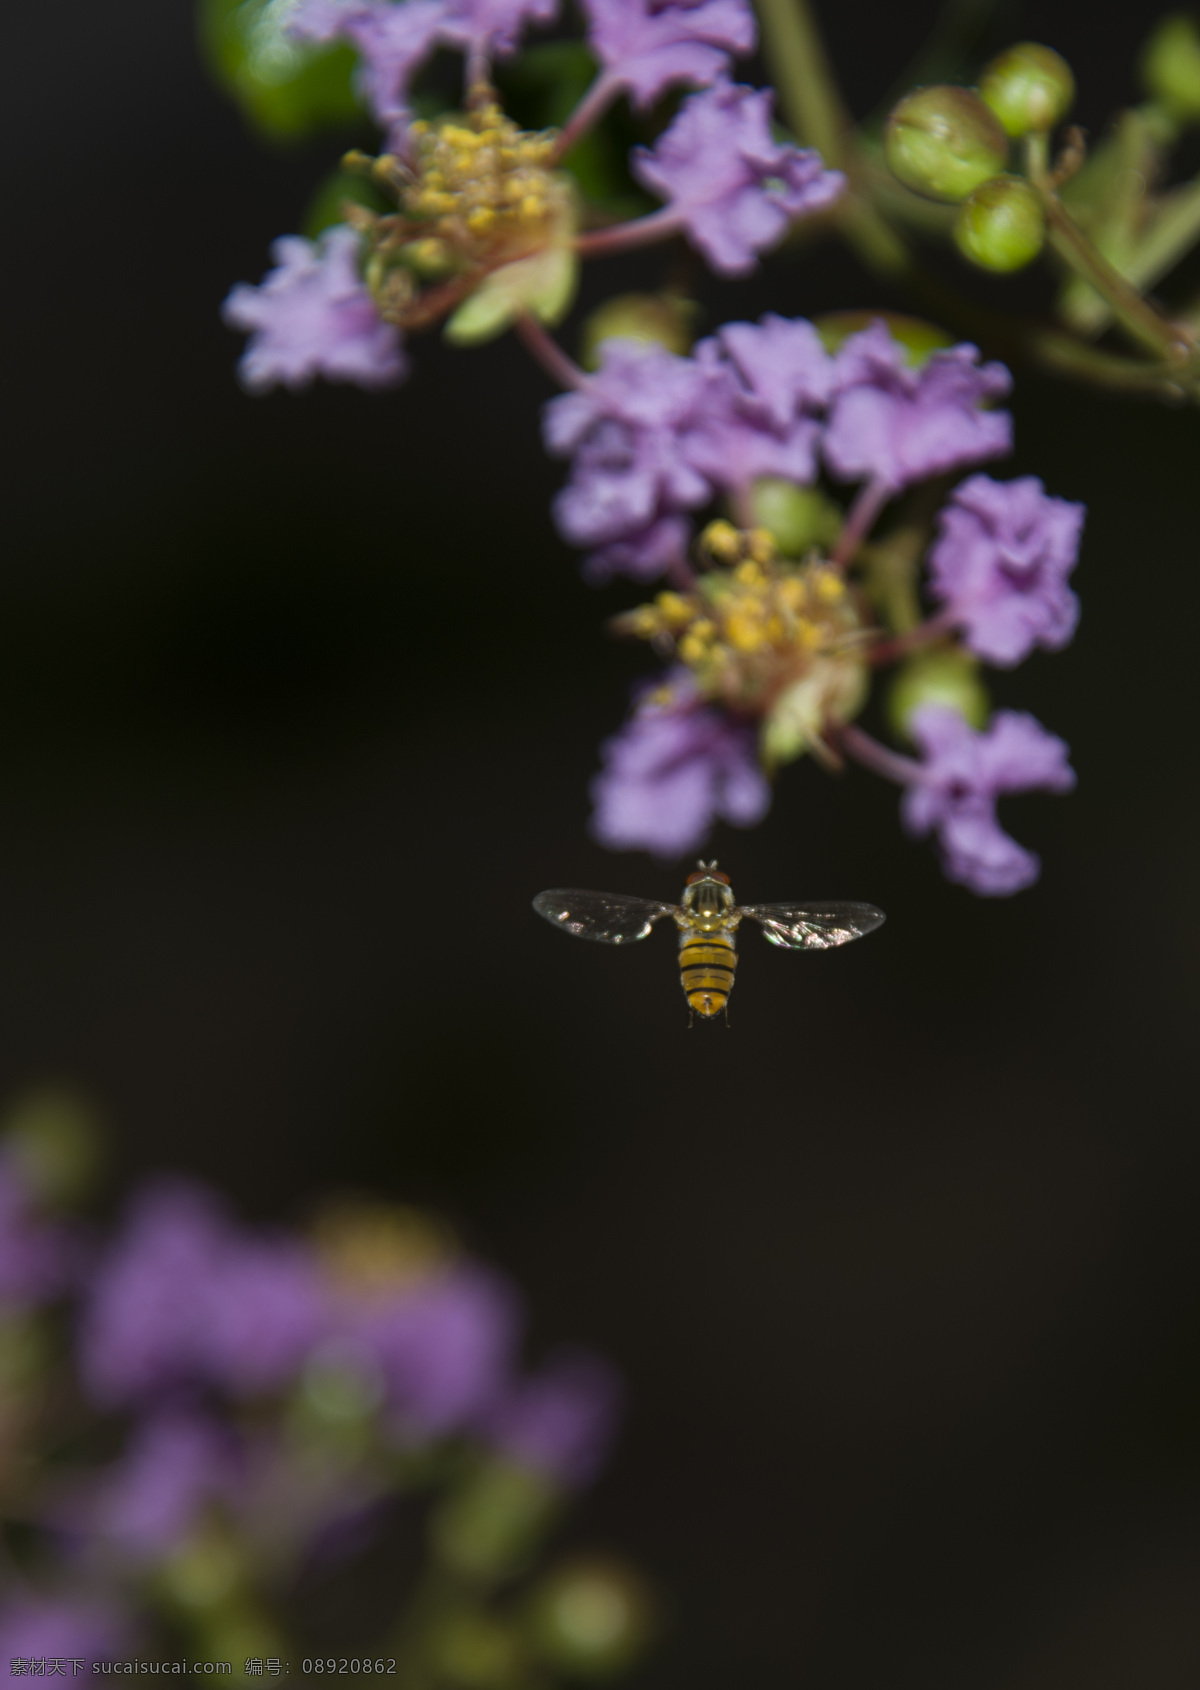 蜜蜂 丁香花 飞行 昆虫 忙碌 蜜蜂采蜜 生物世界 花蜜 飞在花丛中 紫丁香